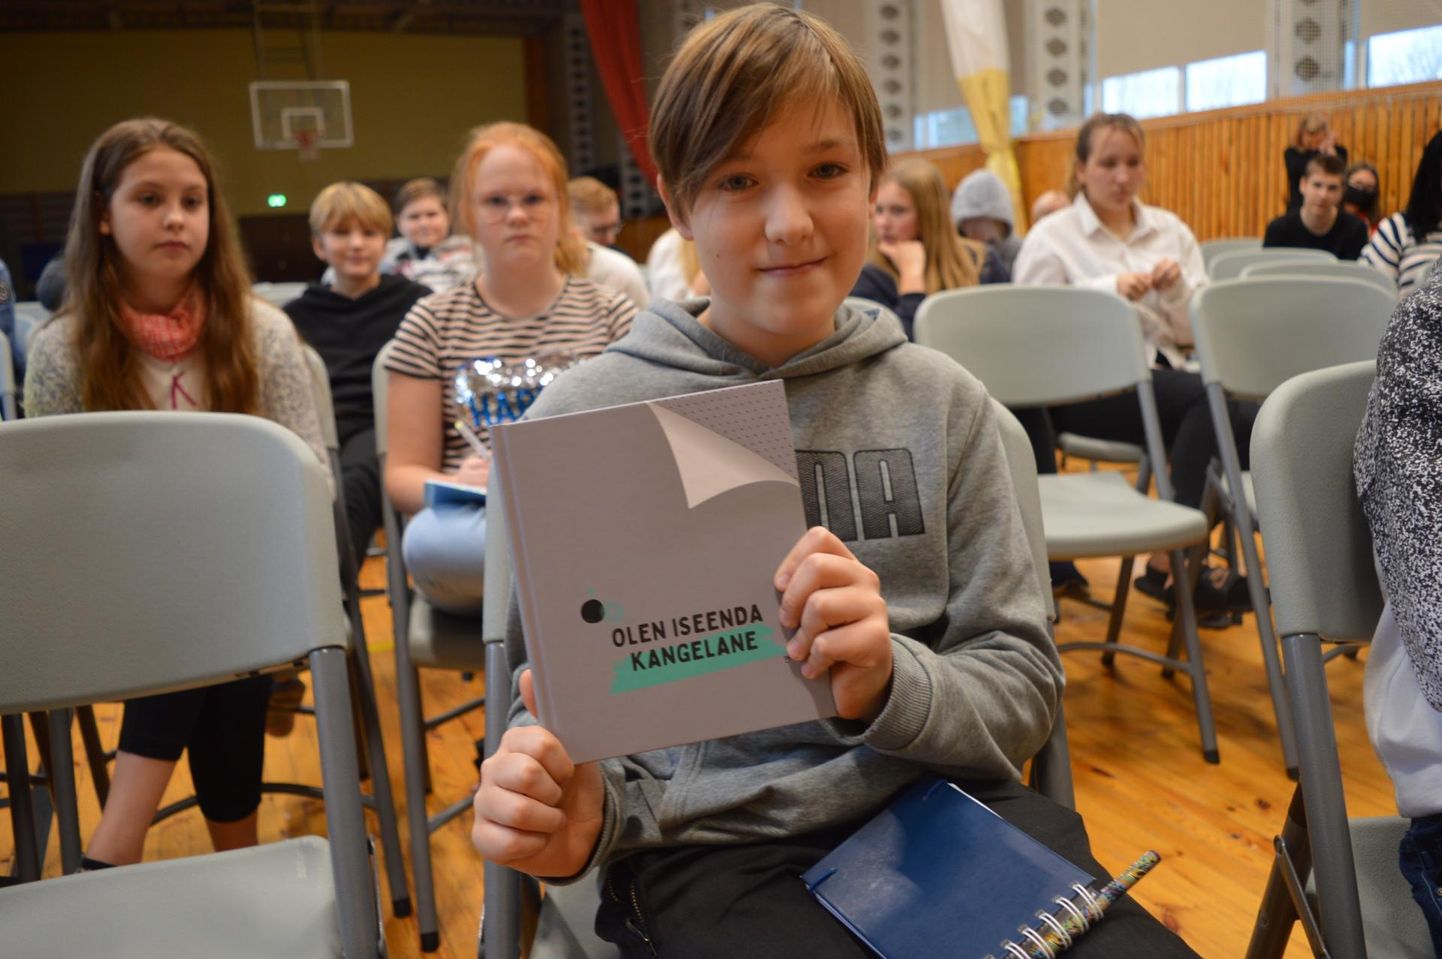 Kalmetu kooli viienda klassi poiss Romet Grünberg sai koolikiusamise konverentsil hea küsimuse eest raamatu.